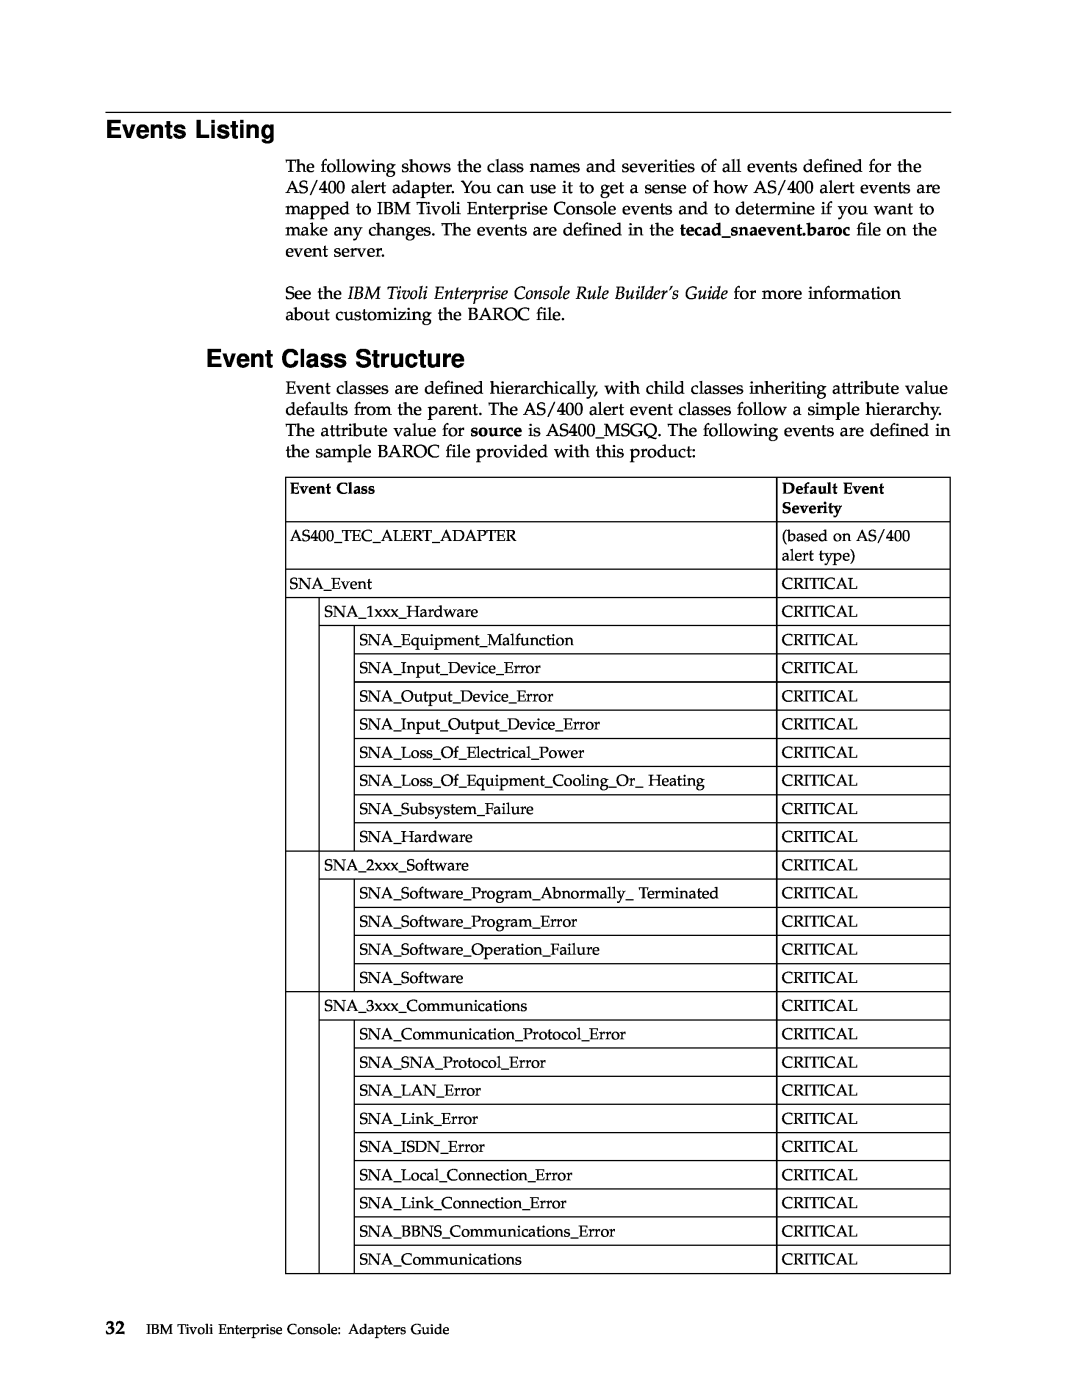 IBM Enterprise Console manual Events Listing, Event Class Structure, Default Event, Severity 